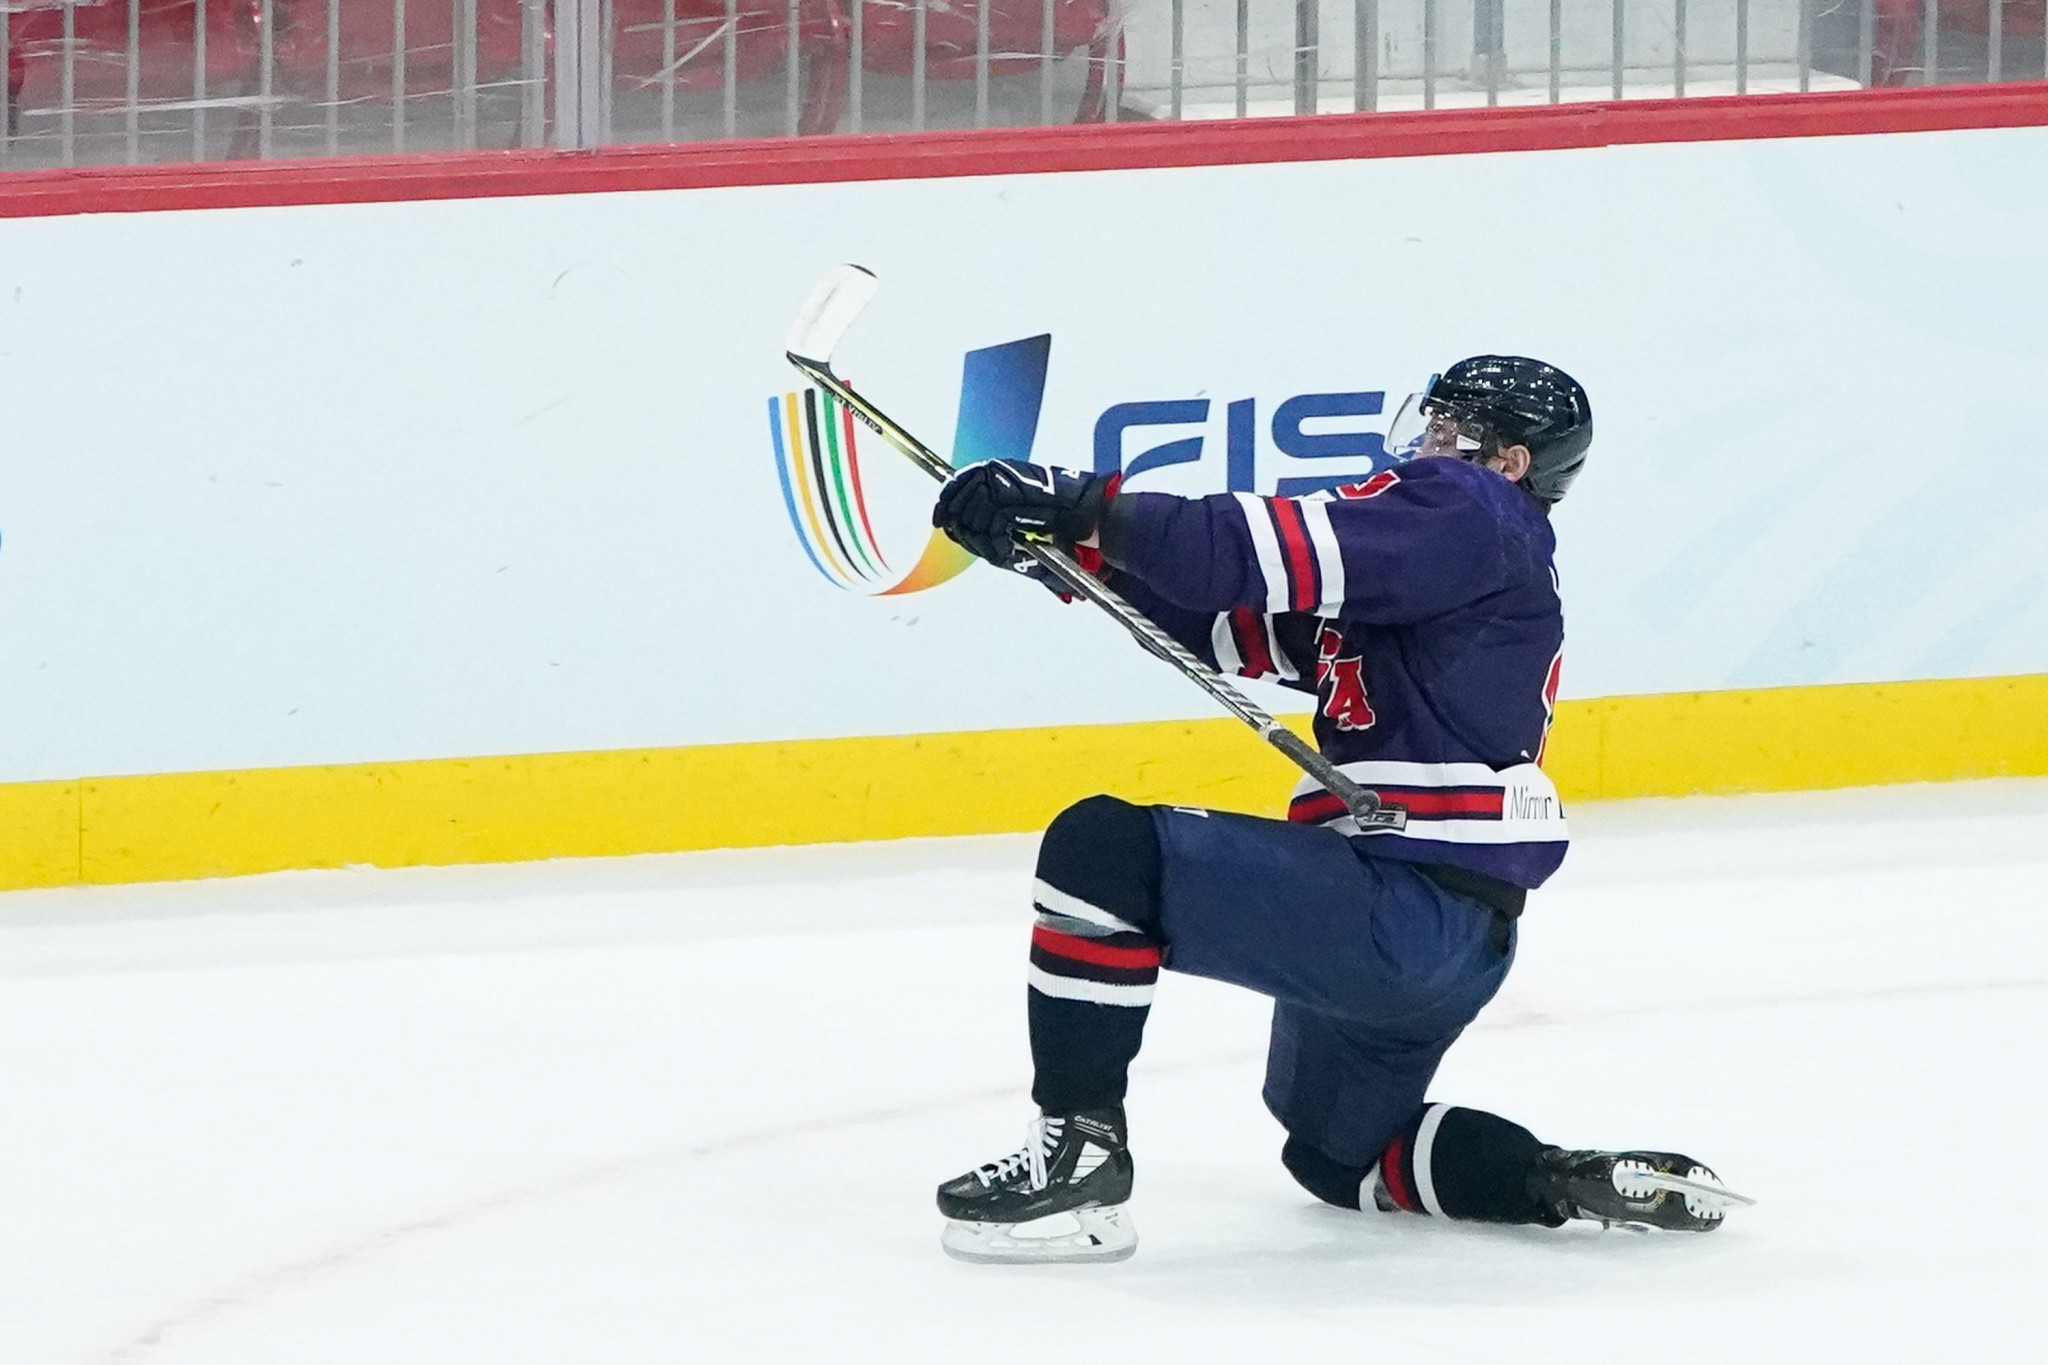 Samuel Ruffin scored an overtime winner for the US against Japan in the men's ice hockey semi-final ©FISU